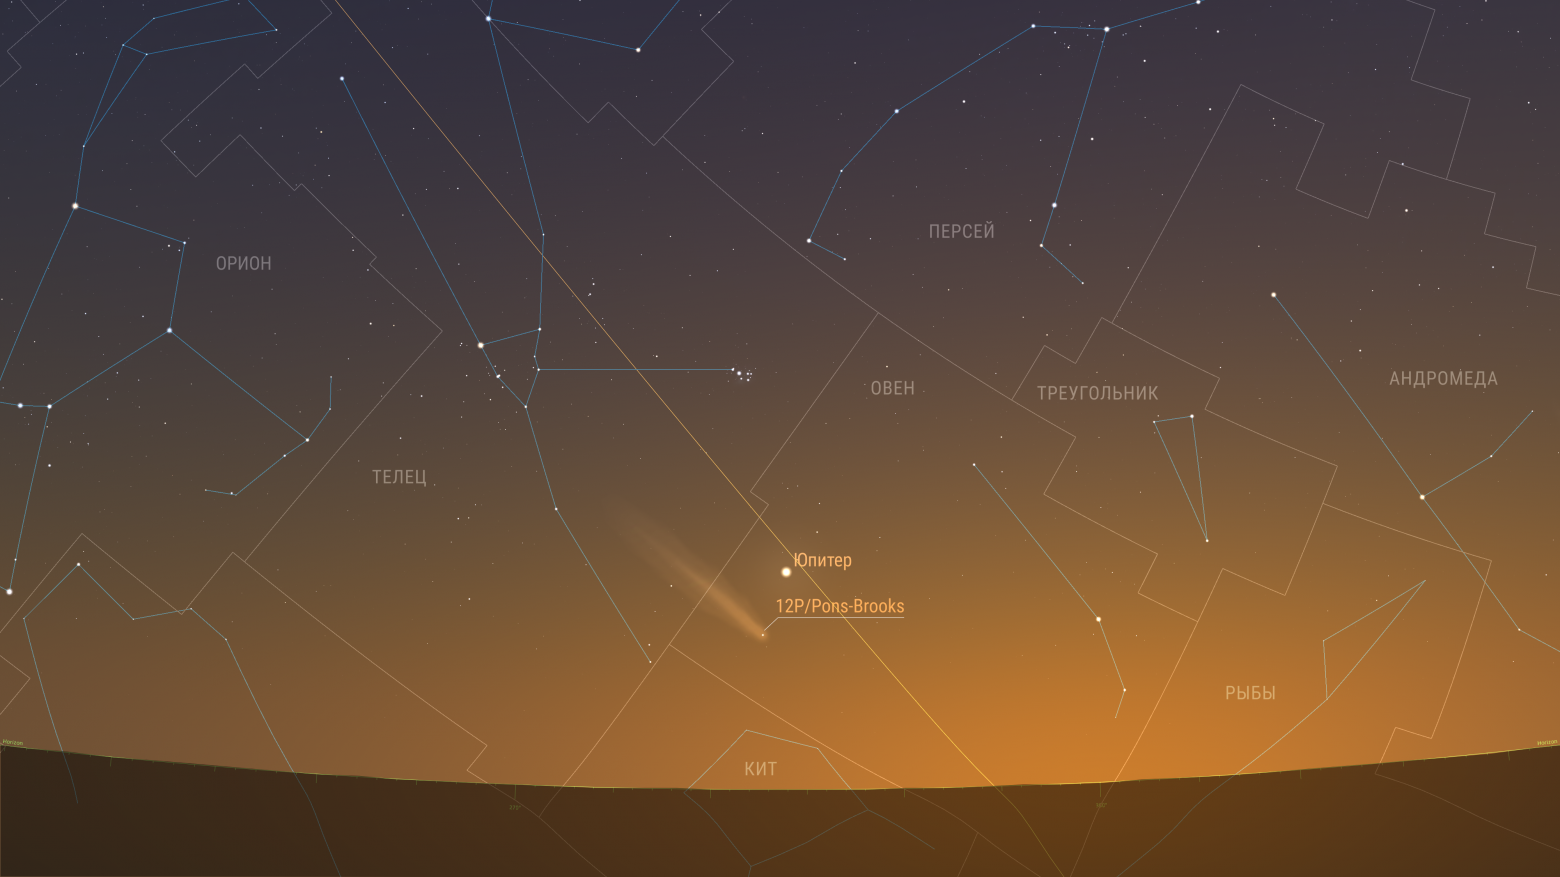 Комета продолжает движение по созвездию Овна и удаляется от Юпитера. Предполагаемая звездная величина 3,73m. Элонгация 23 градуса.